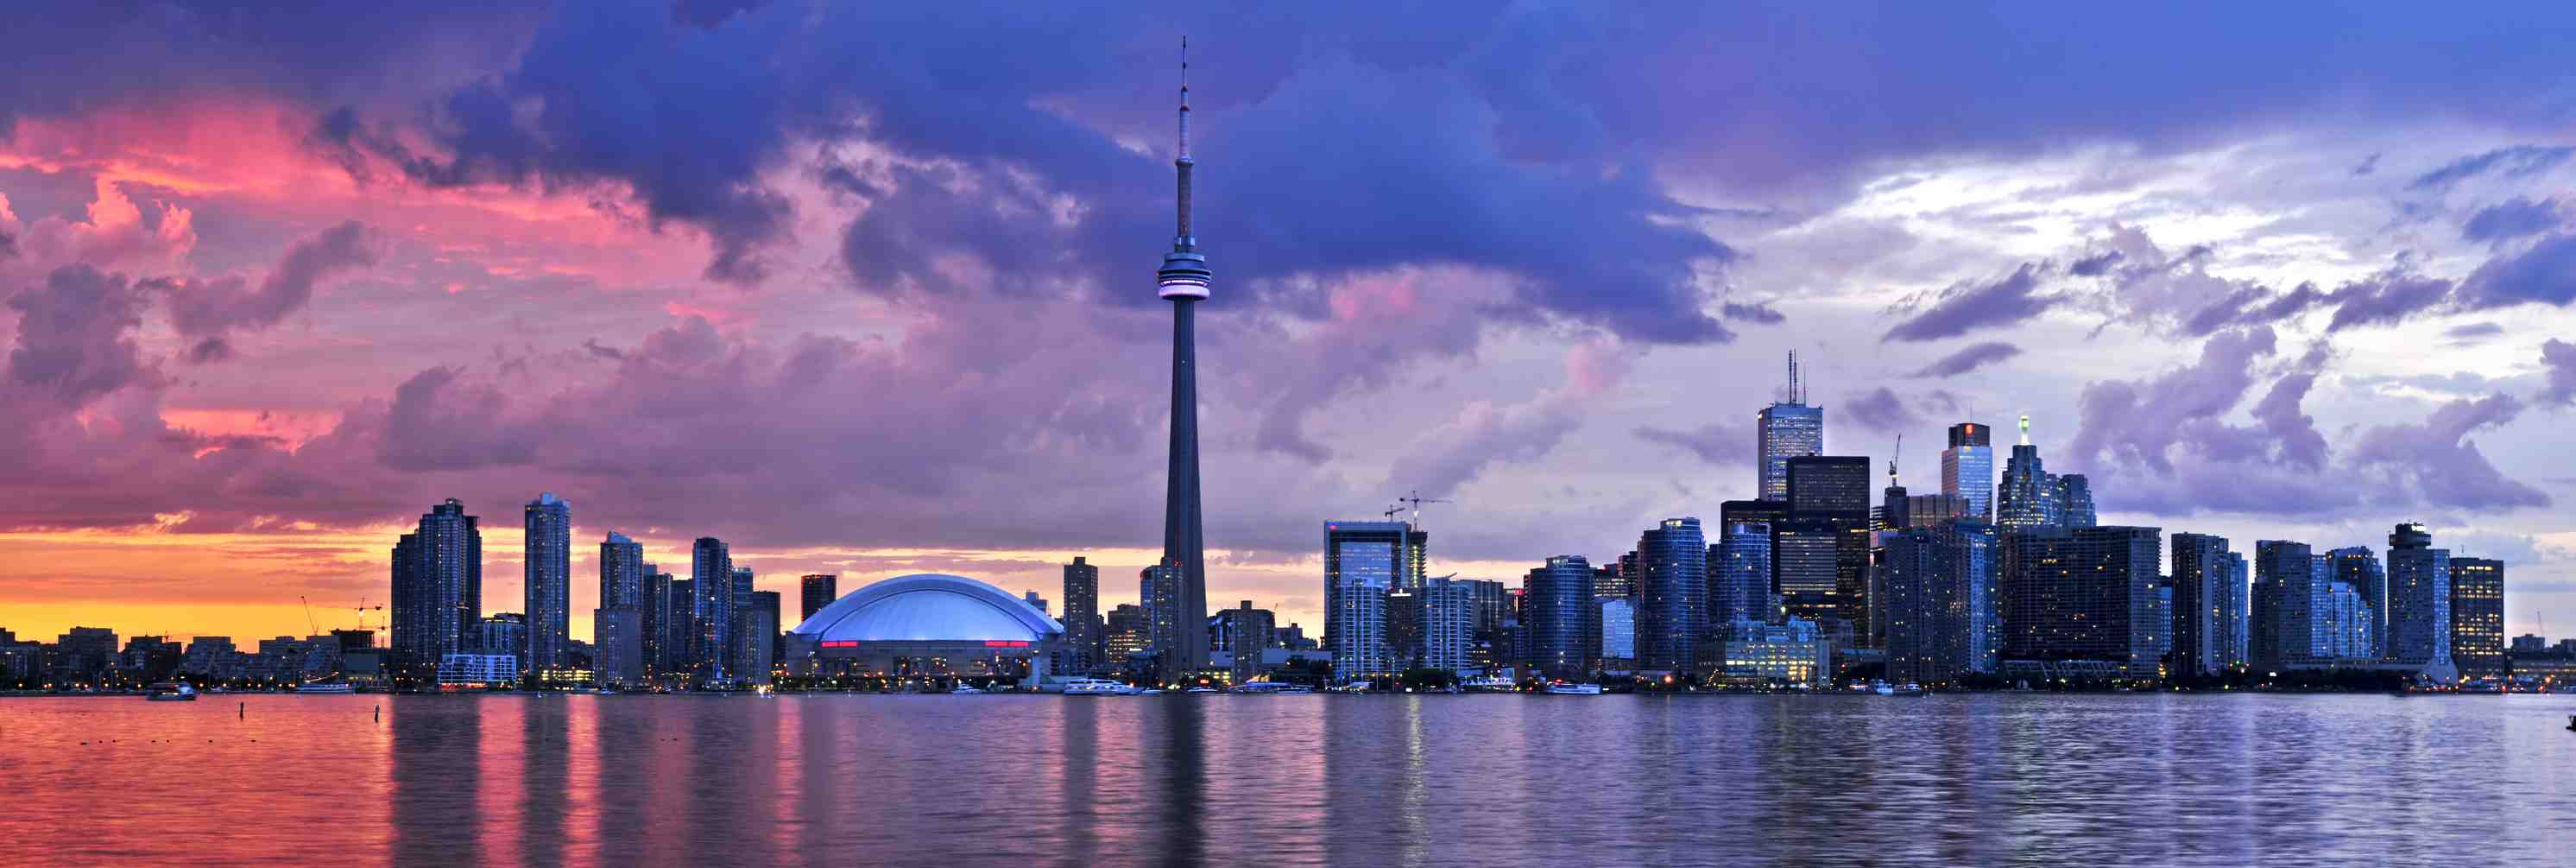 Downtown Toronto Vs Greater Skyline Night Jpg